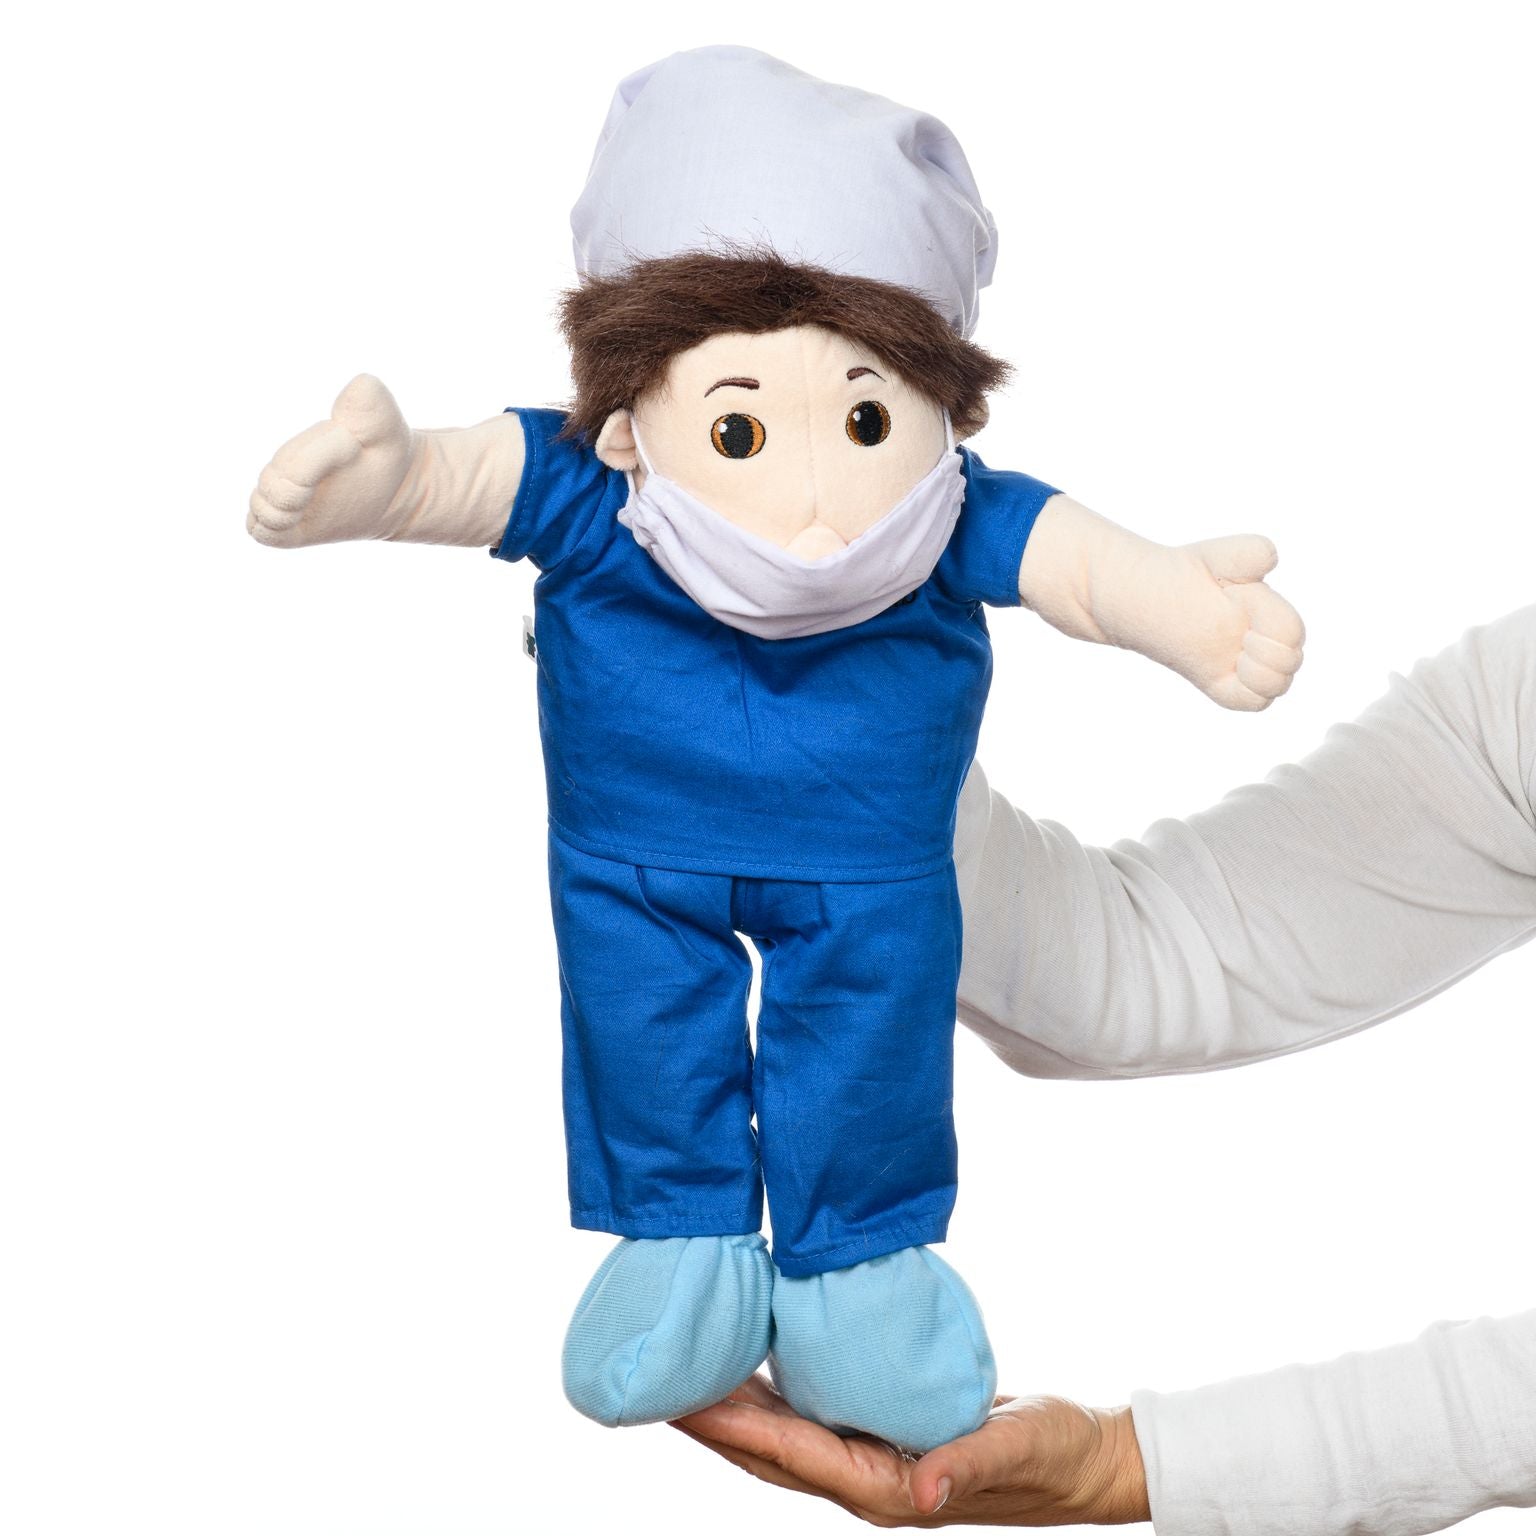 Hand Puppet - Boy, dressed as a Scrub Nurse